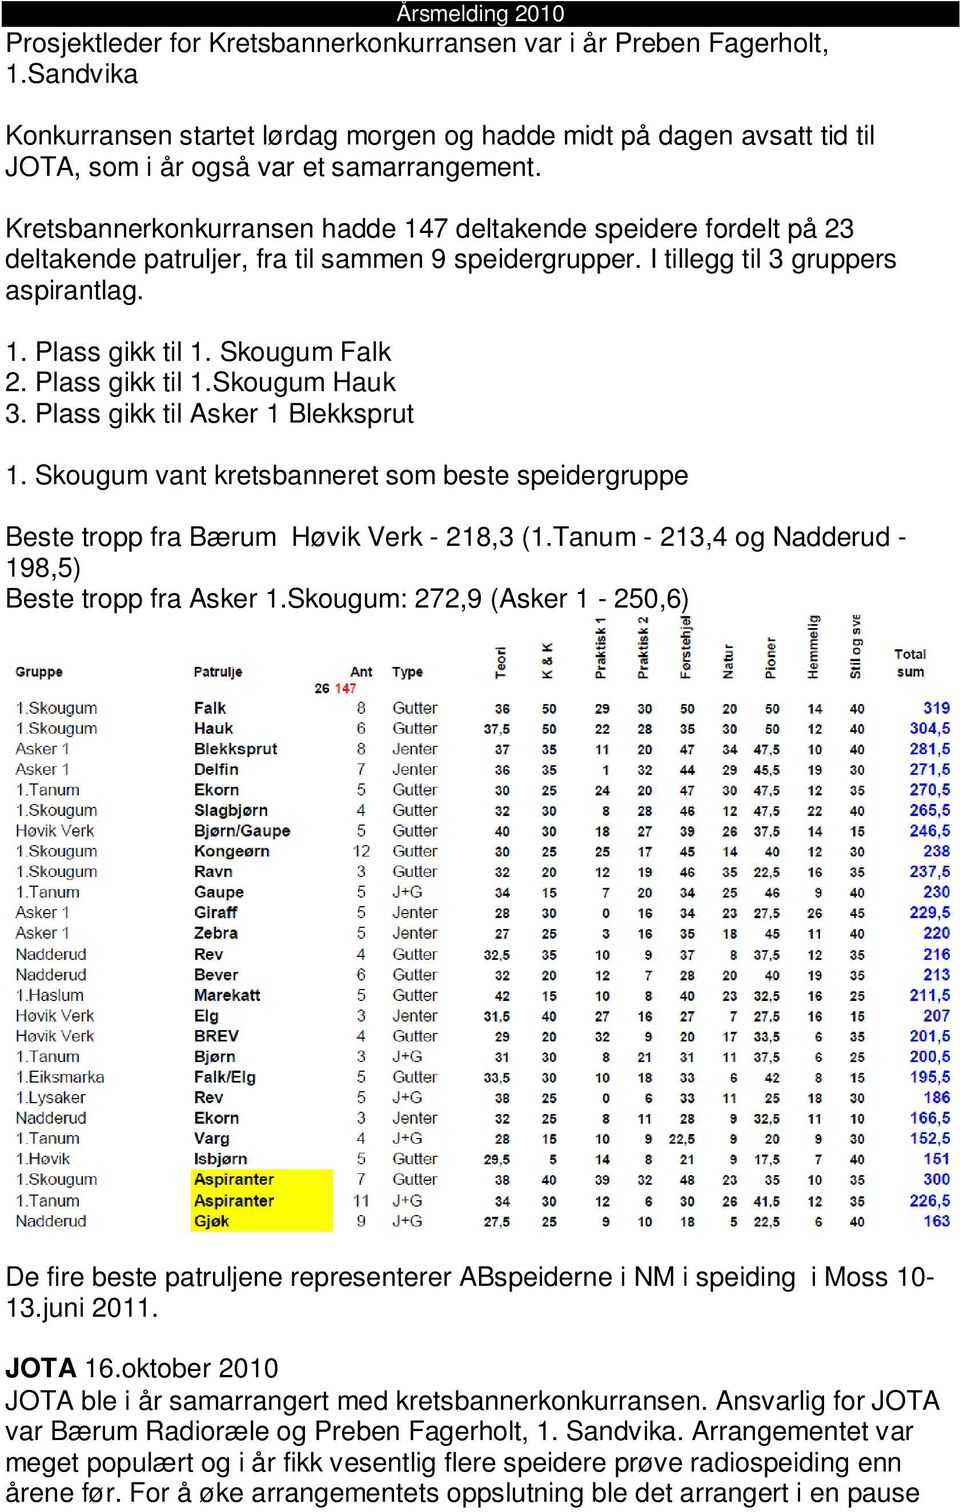 Plass gikk til 1.Skougum Hauk 3. Plass gikk til Asker 1 Blekksprut 1. Skougum vant kretsbanneret som beste speidergruppe Beste tropp fra Bærum Høvik Verk - 218,3 (1.